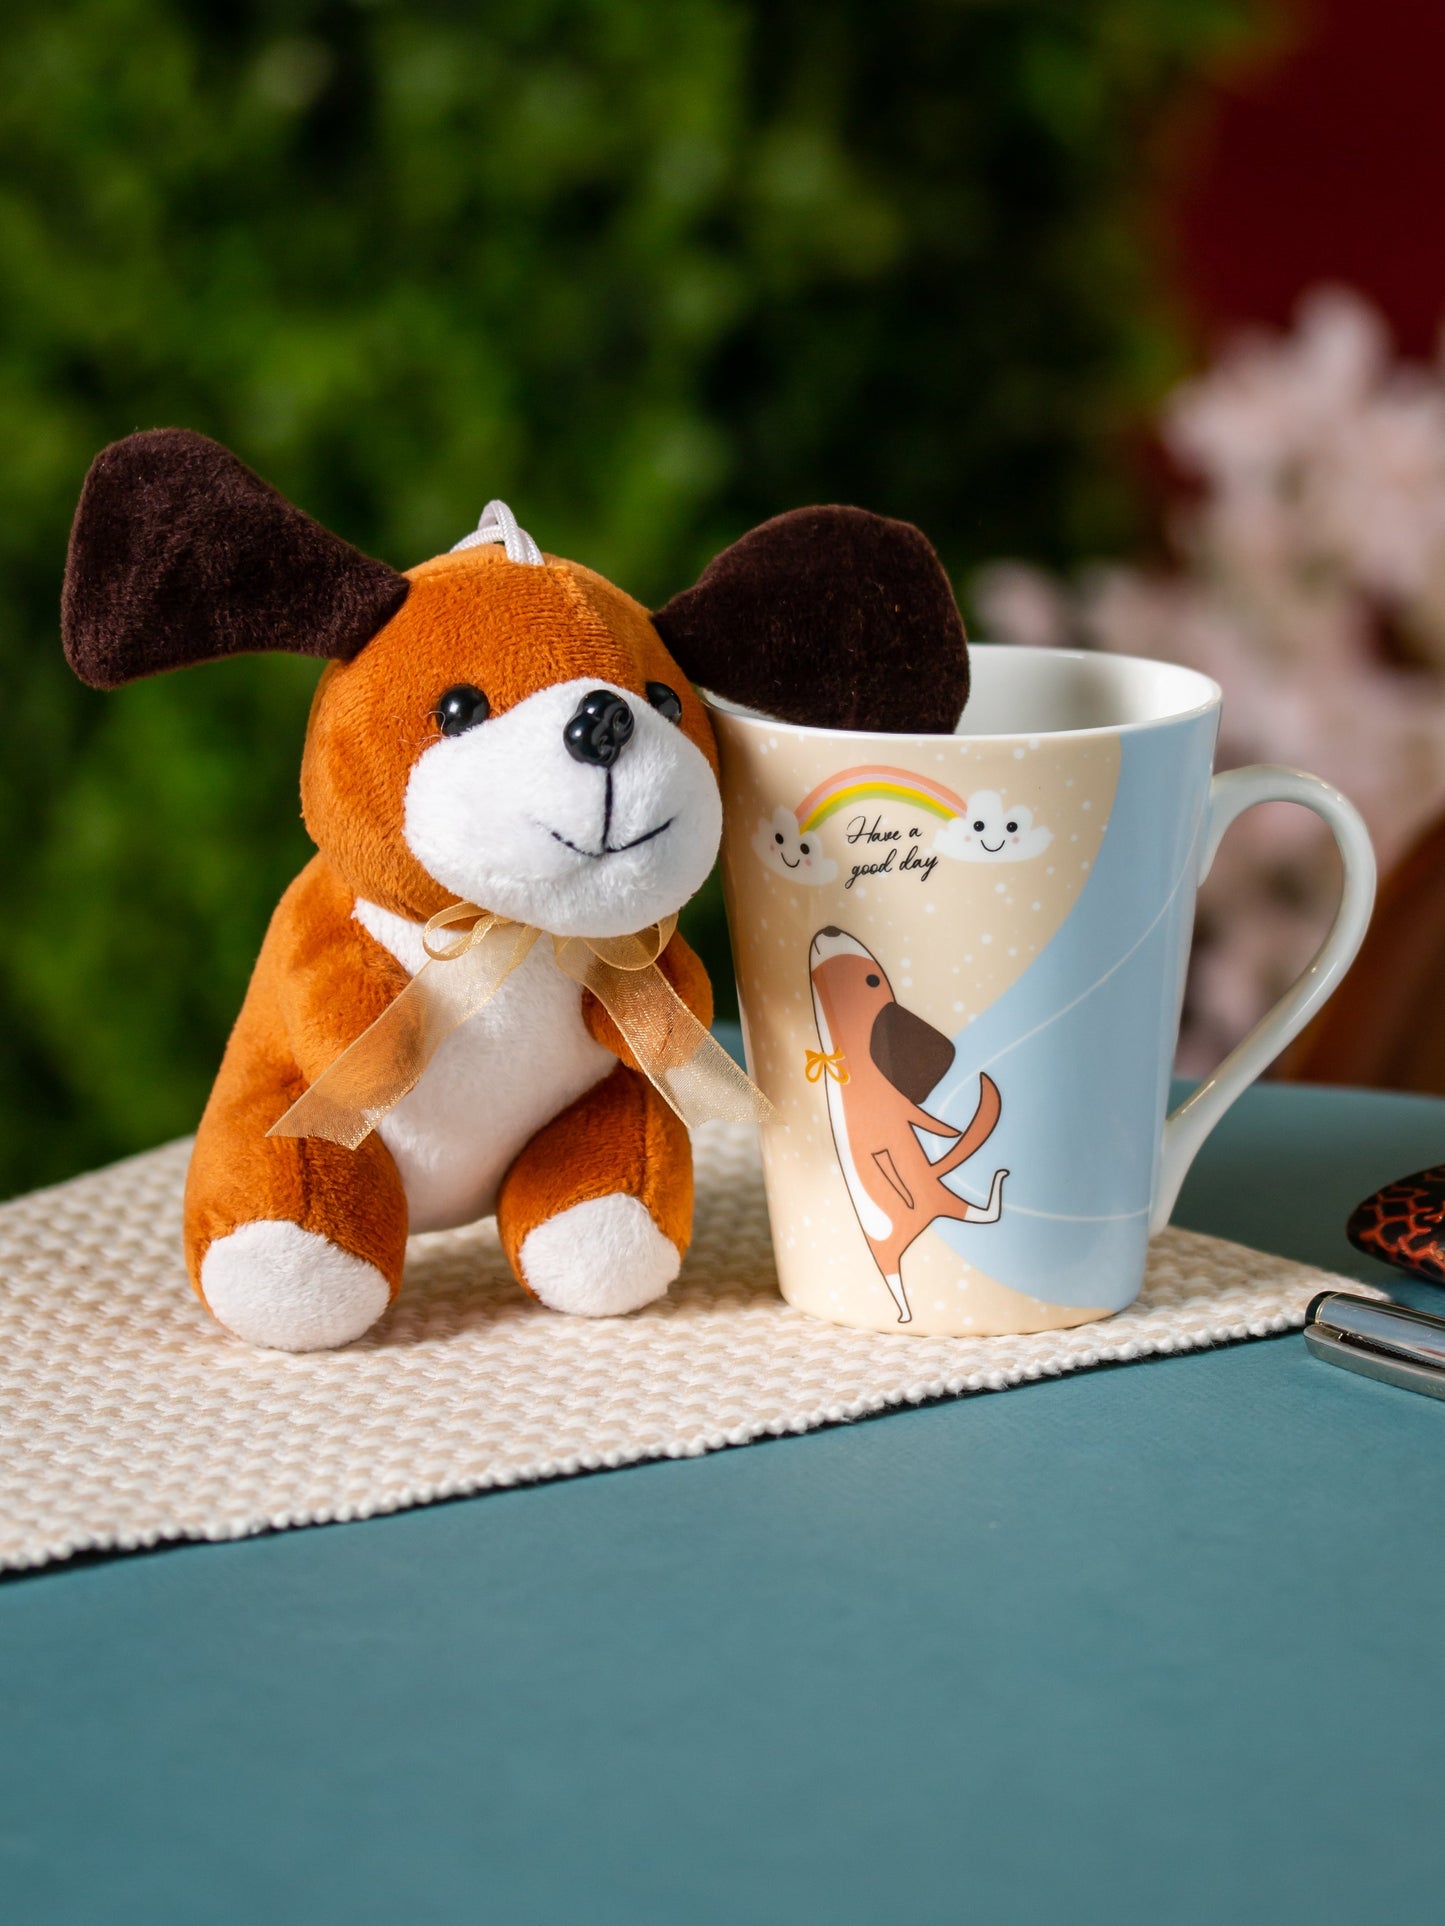 Zing Dog Coffee & Milk Mug with Toy, 340ml, 1 Piece